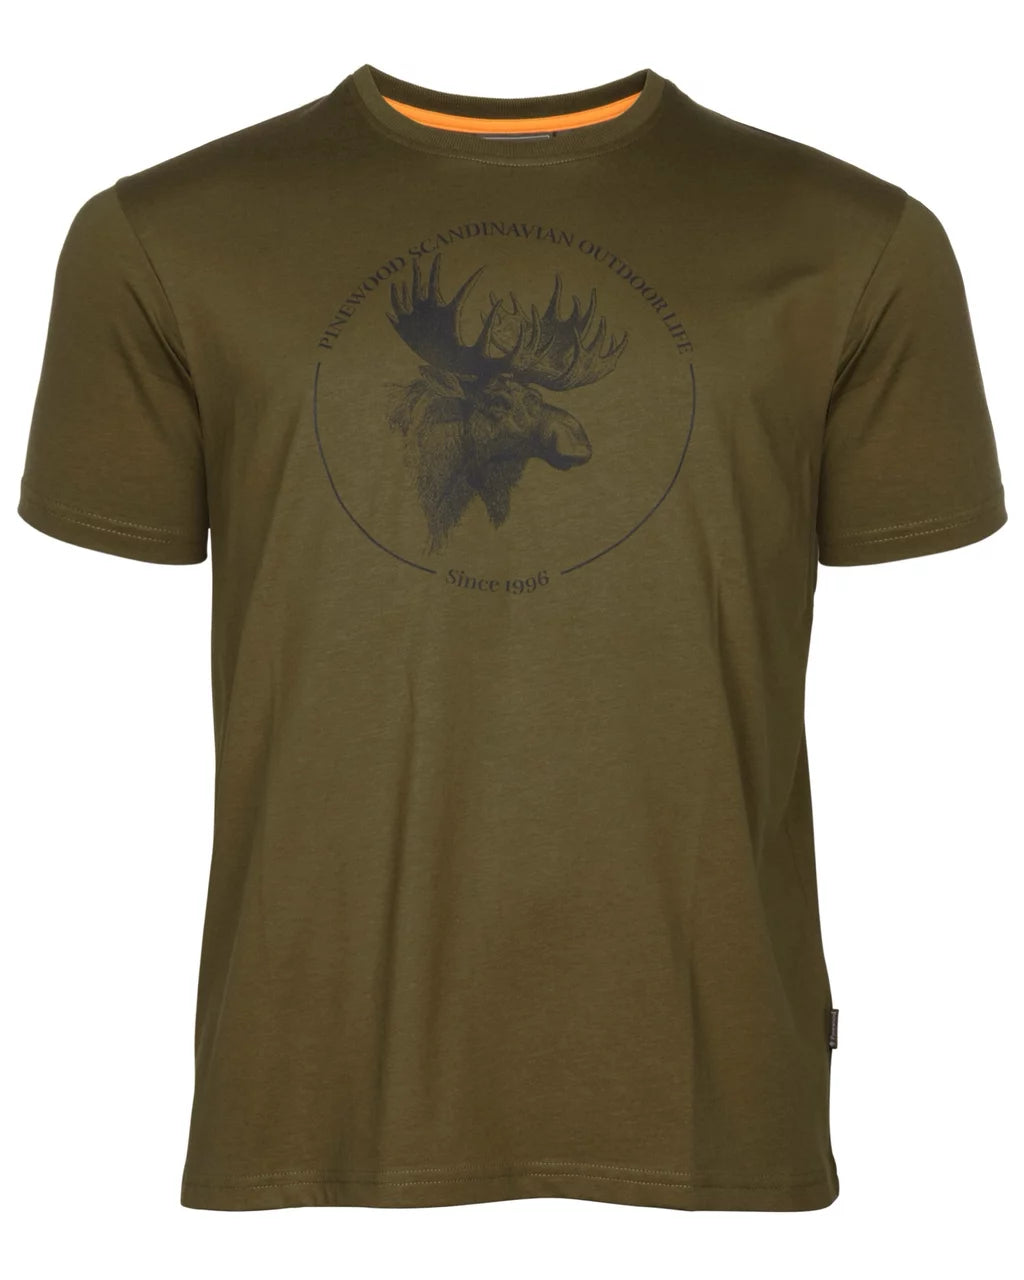 Moose T-shirt